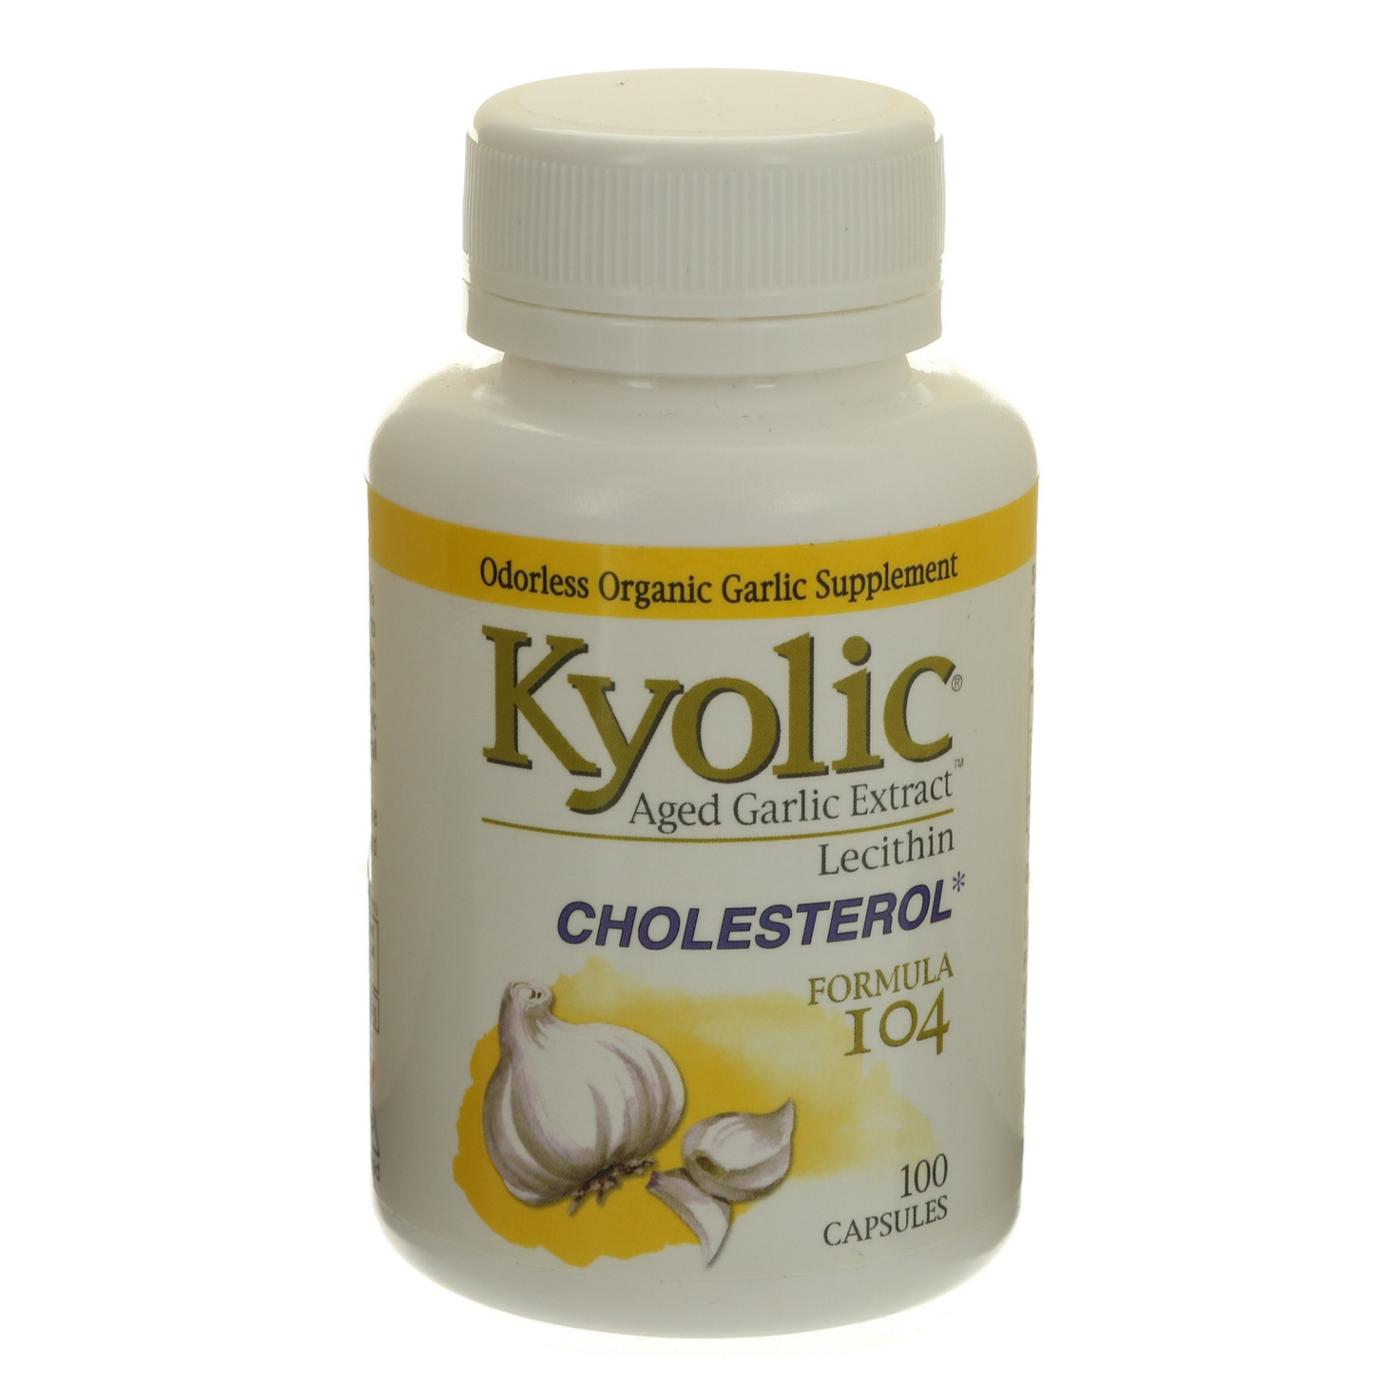 Kyolic Aged Garlic Extract Plus Lecithin Formula 104 Capsules; image 1 of 2